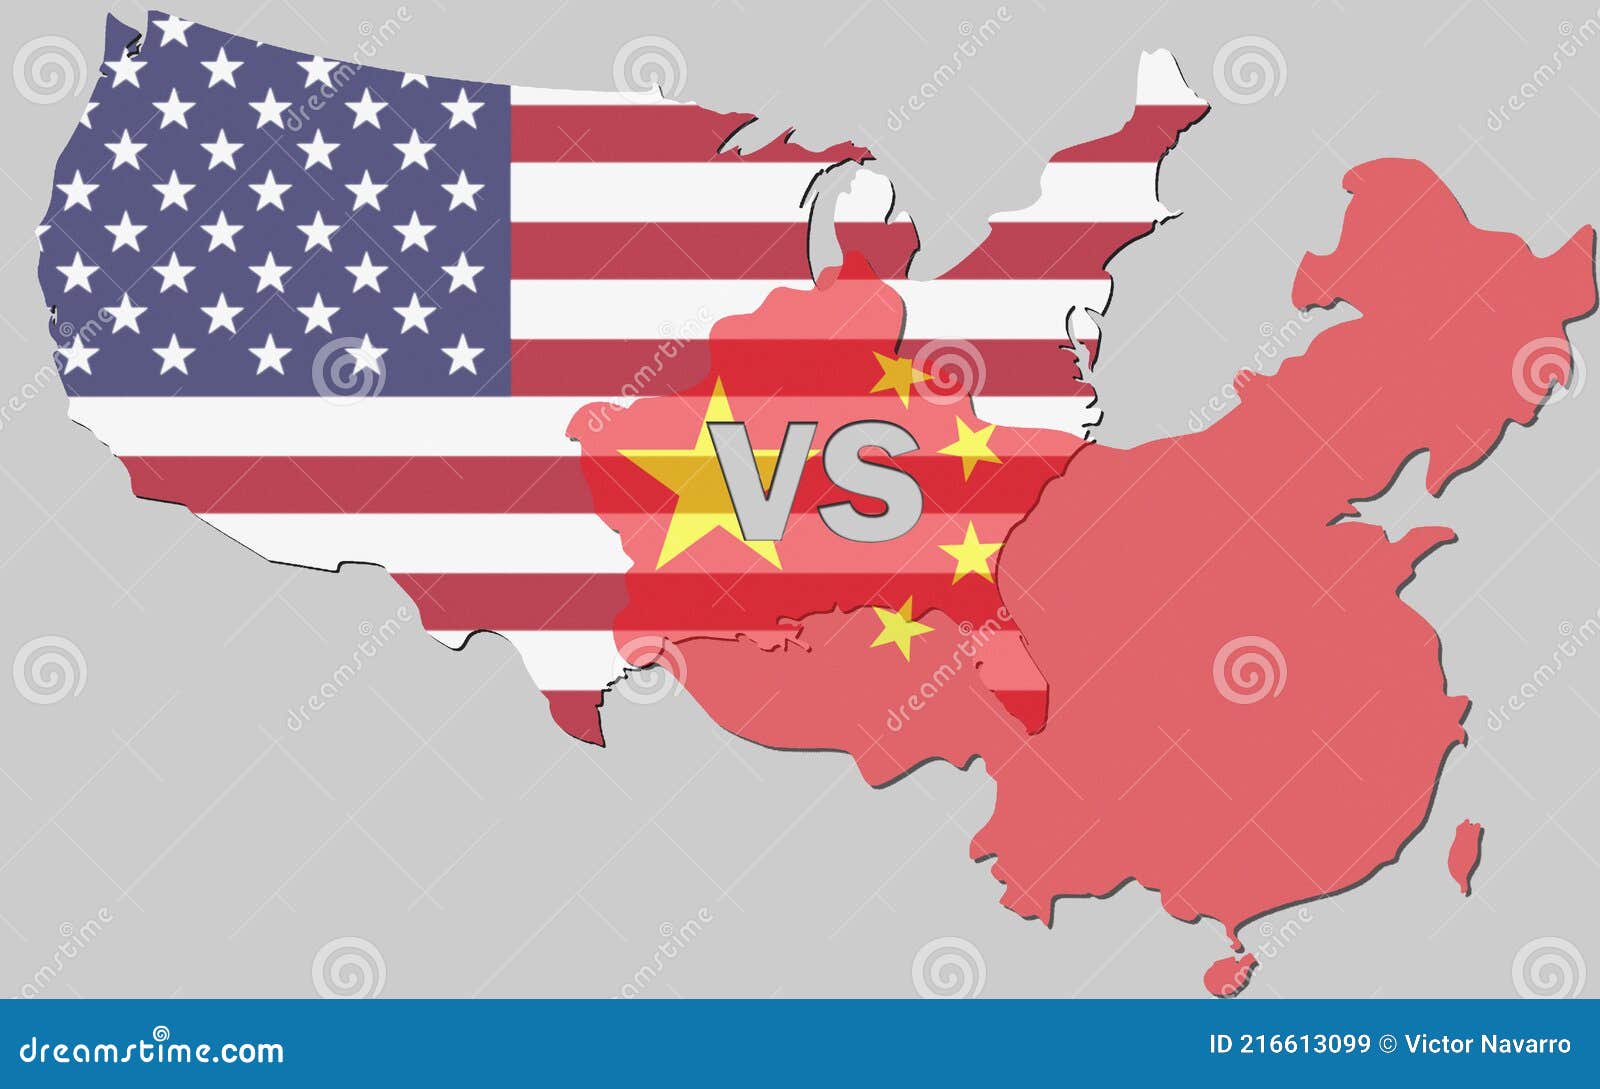 eeuu vs china